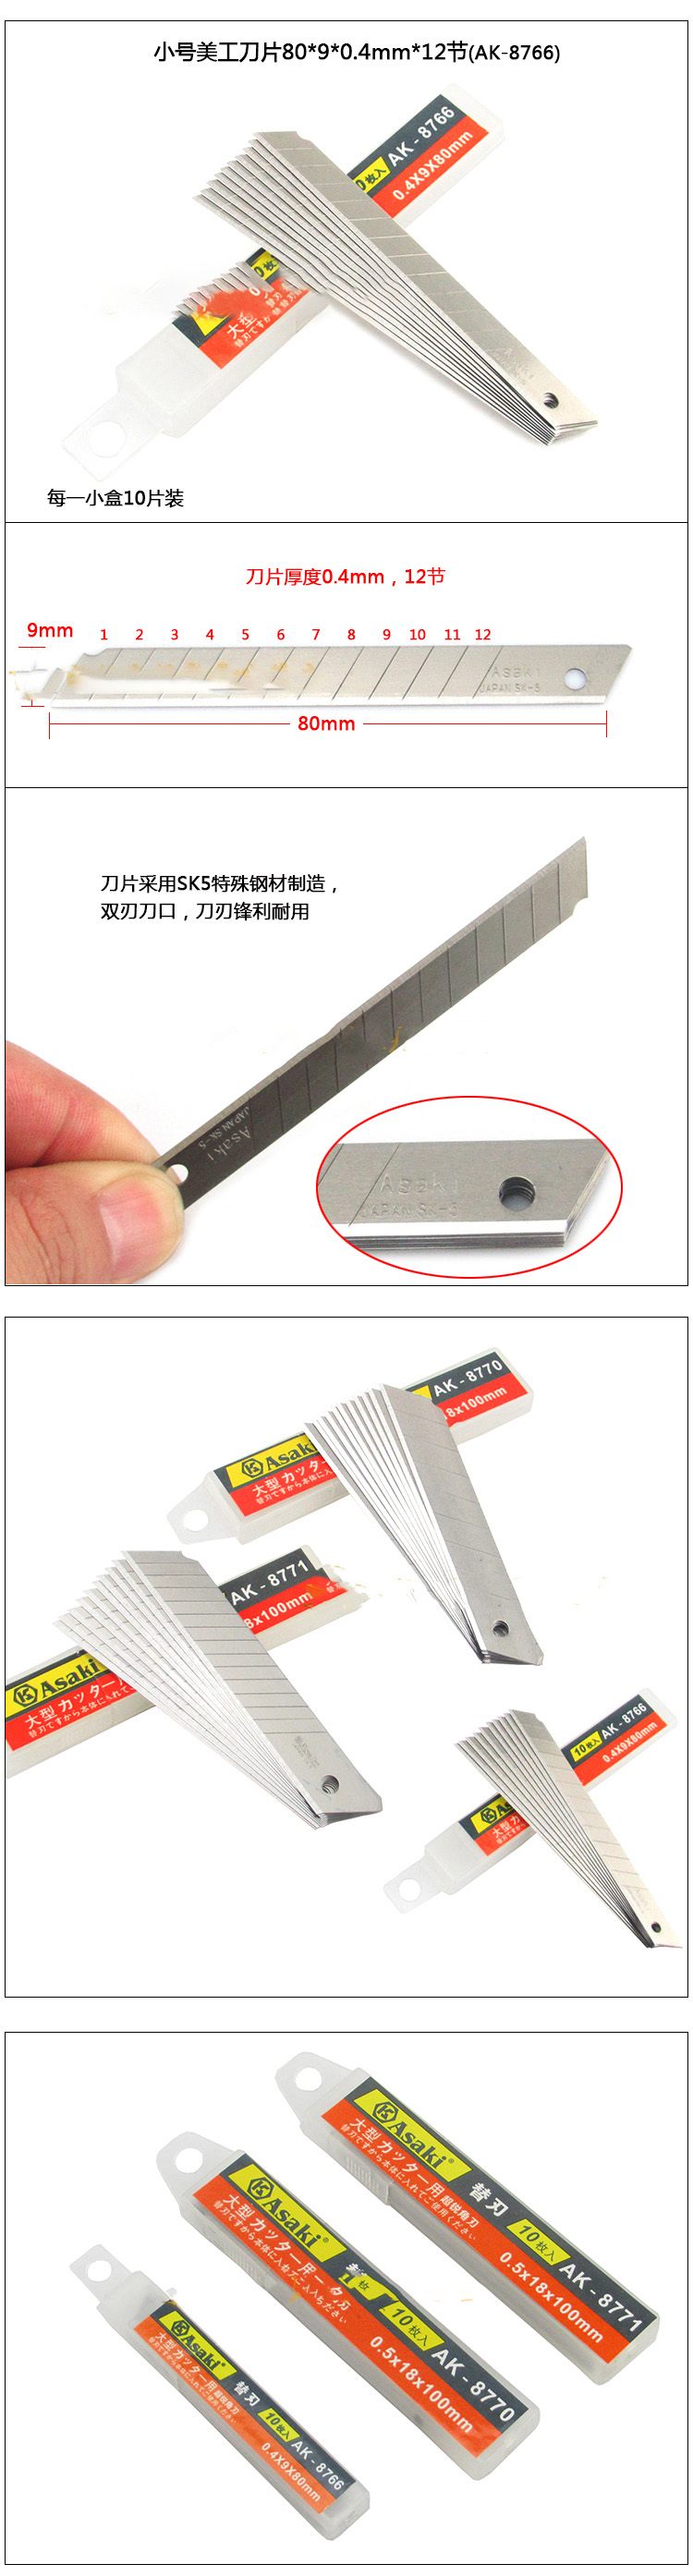 Hình ảnh 2 của mặt hàng Lưỡi dao rọc giấy cao cấp 100 x 18 x 0.5mm 14 sọc Asaki AK-8769